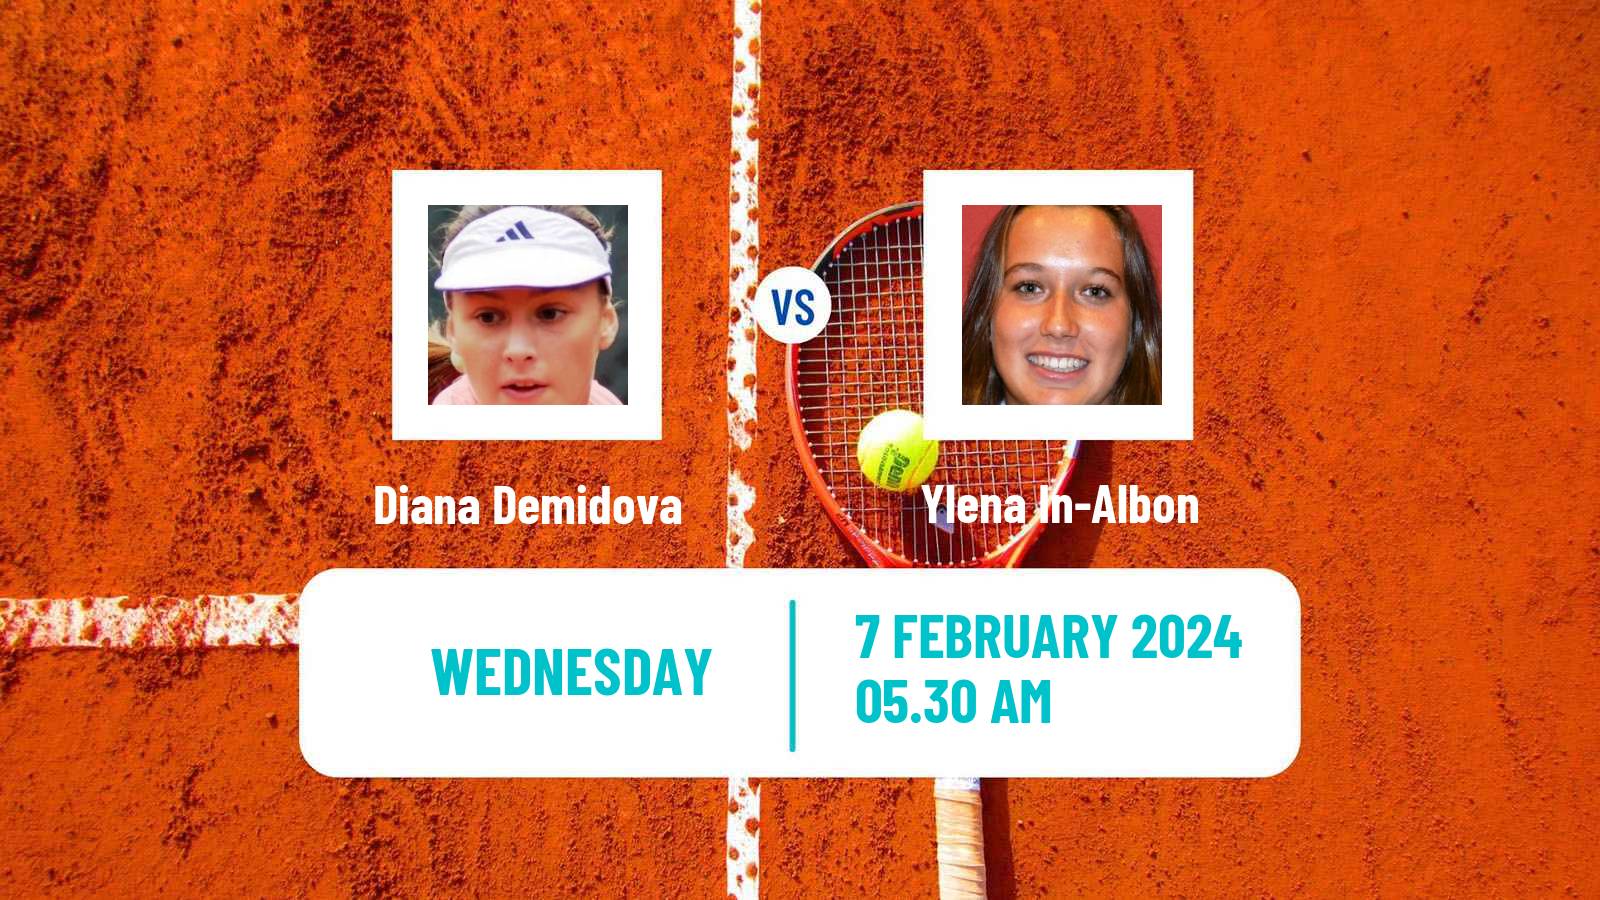 Tennis ITF W35 Antalya 2 Women Diana Demidova - Ylena In-Albon